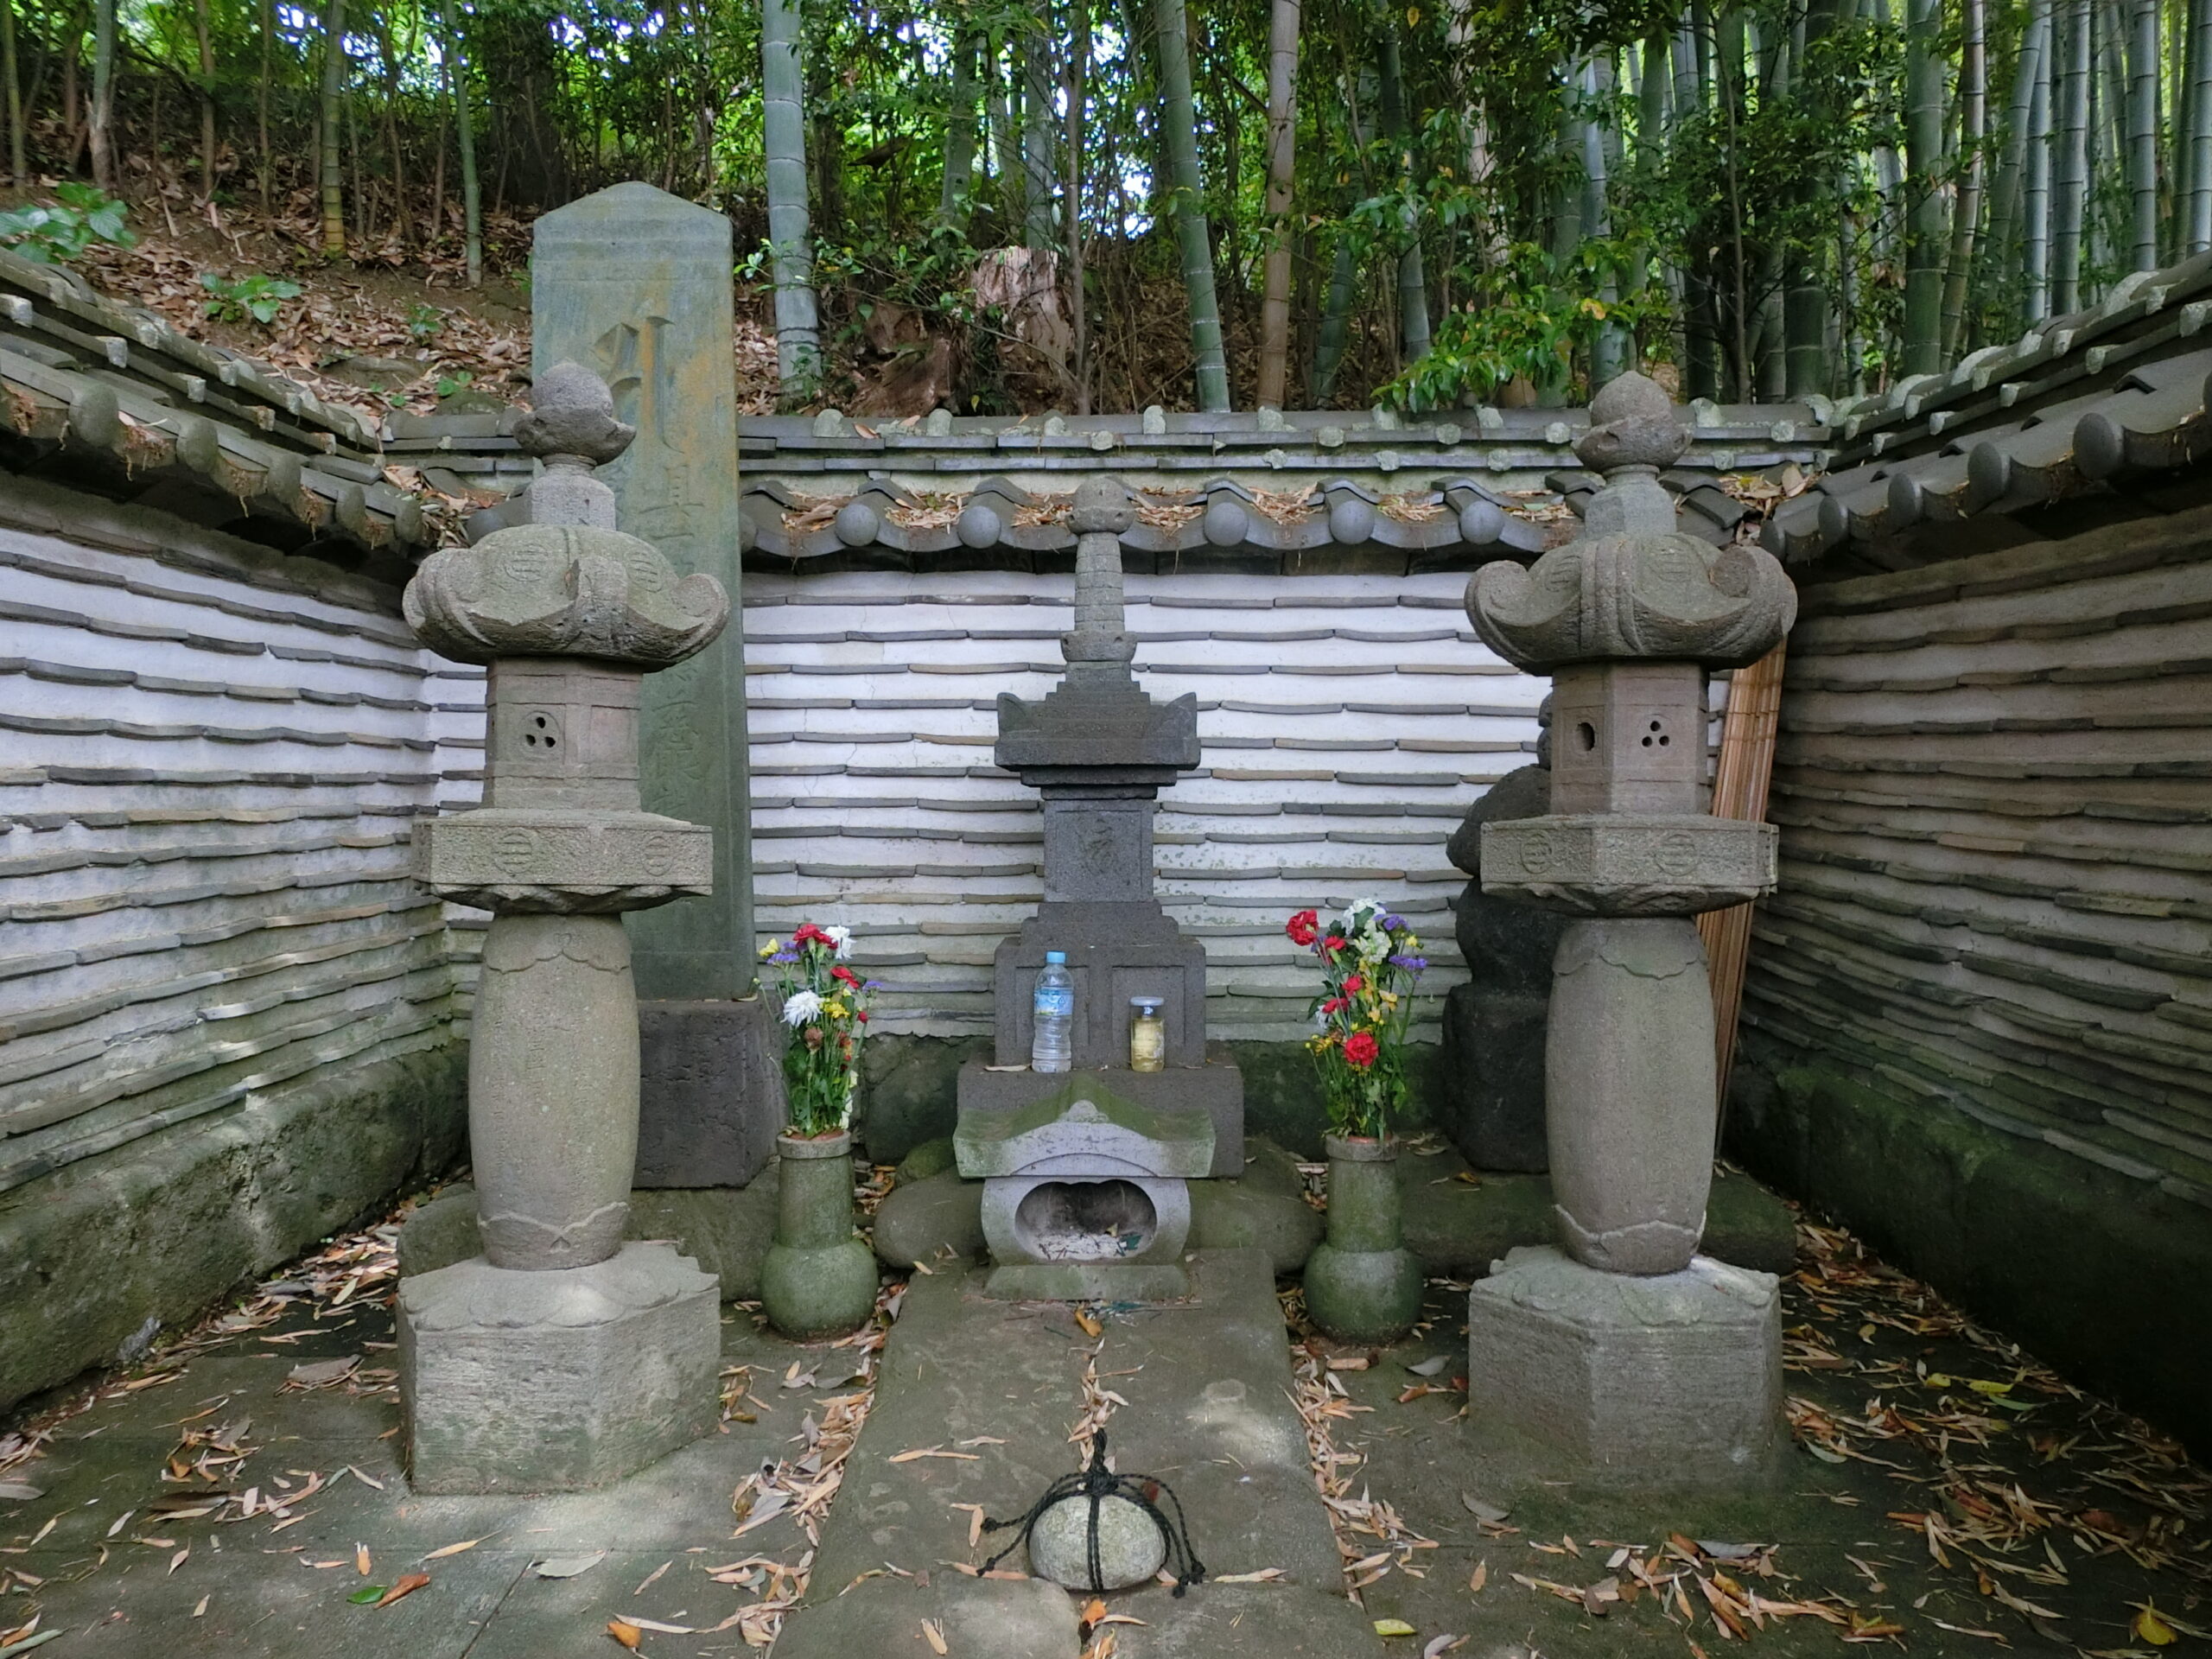 中央の宝篋印塔が三浦義明、右の五輪塔が義明の妻の墓と伝えられている